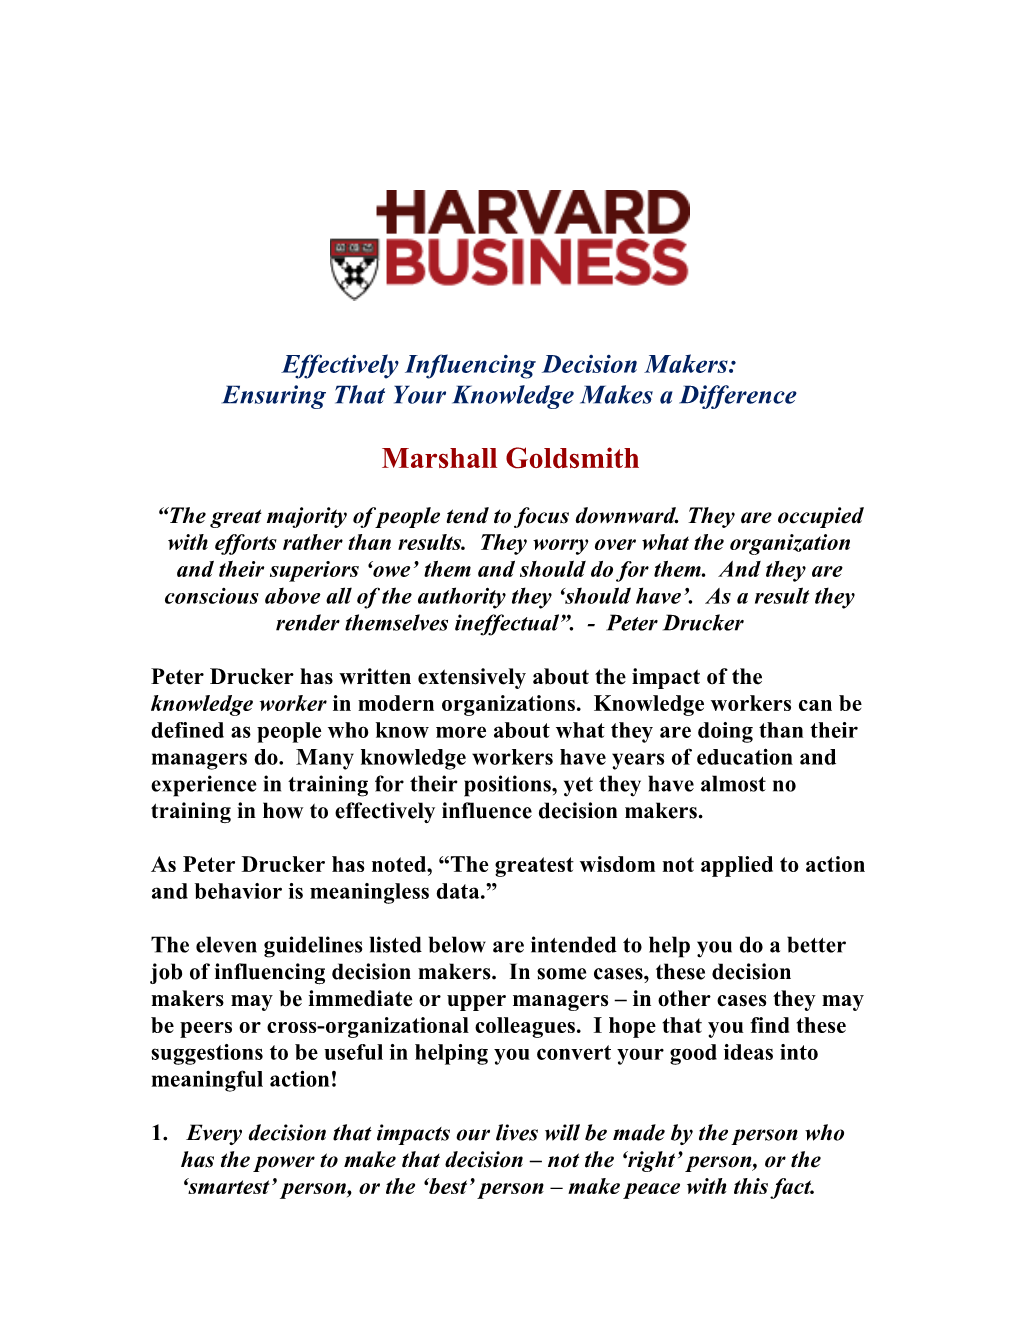 Harvard Business Online